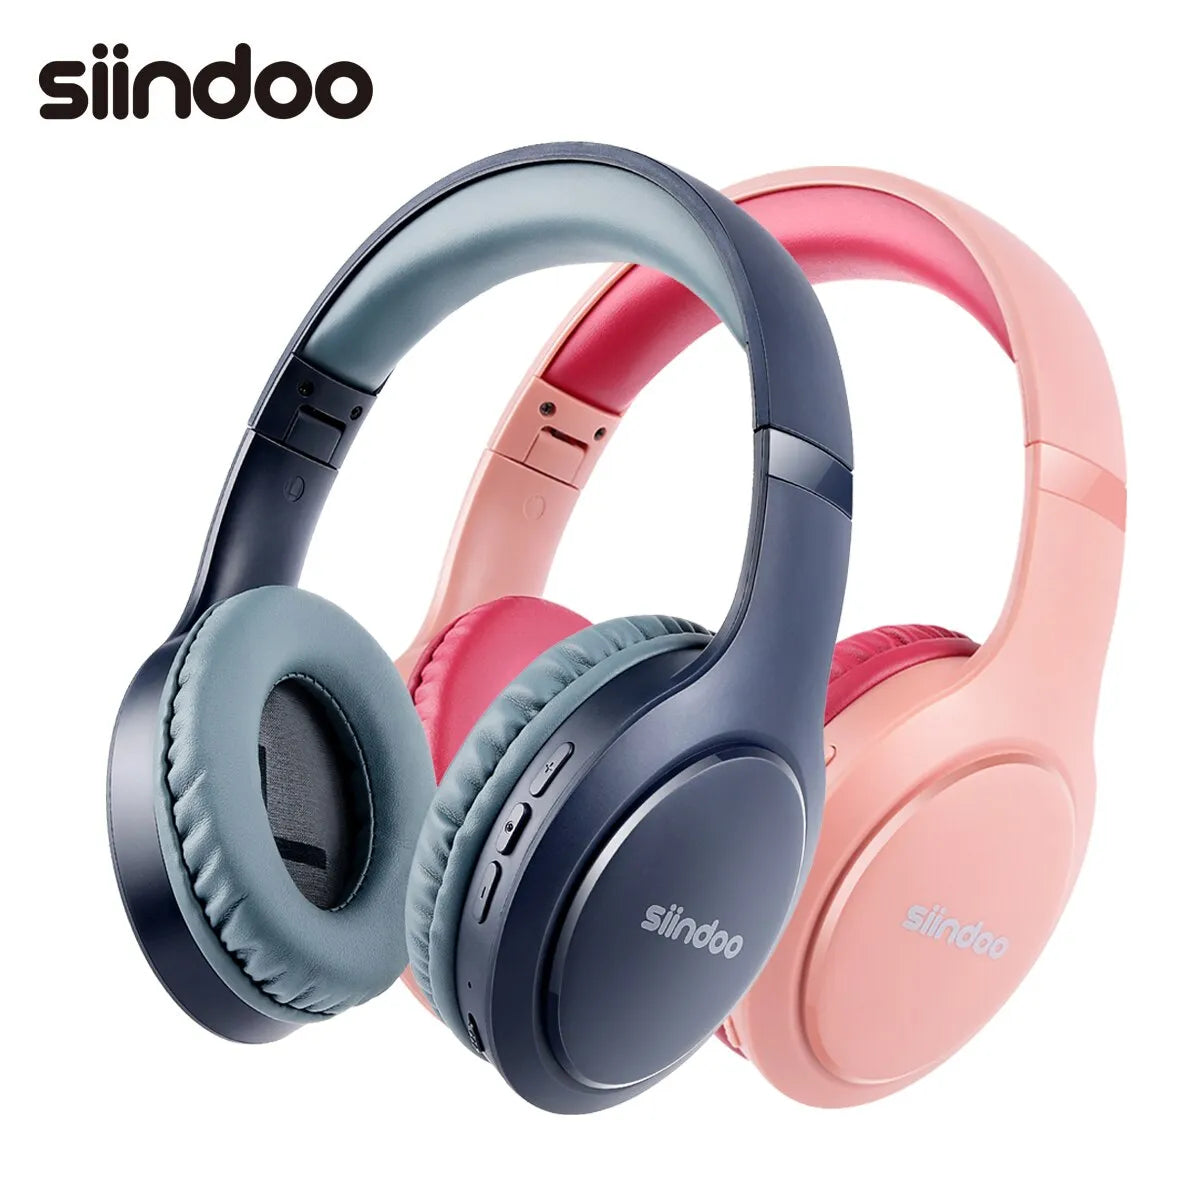 Siindoo JH-919 Kablosuz Bluetooth Kulaklık Pembe ve Mavi Katlanabilir Stereo Kulaklık Süper Bas Gürültü Önleyici Mikrofon Dizüstü TV Için